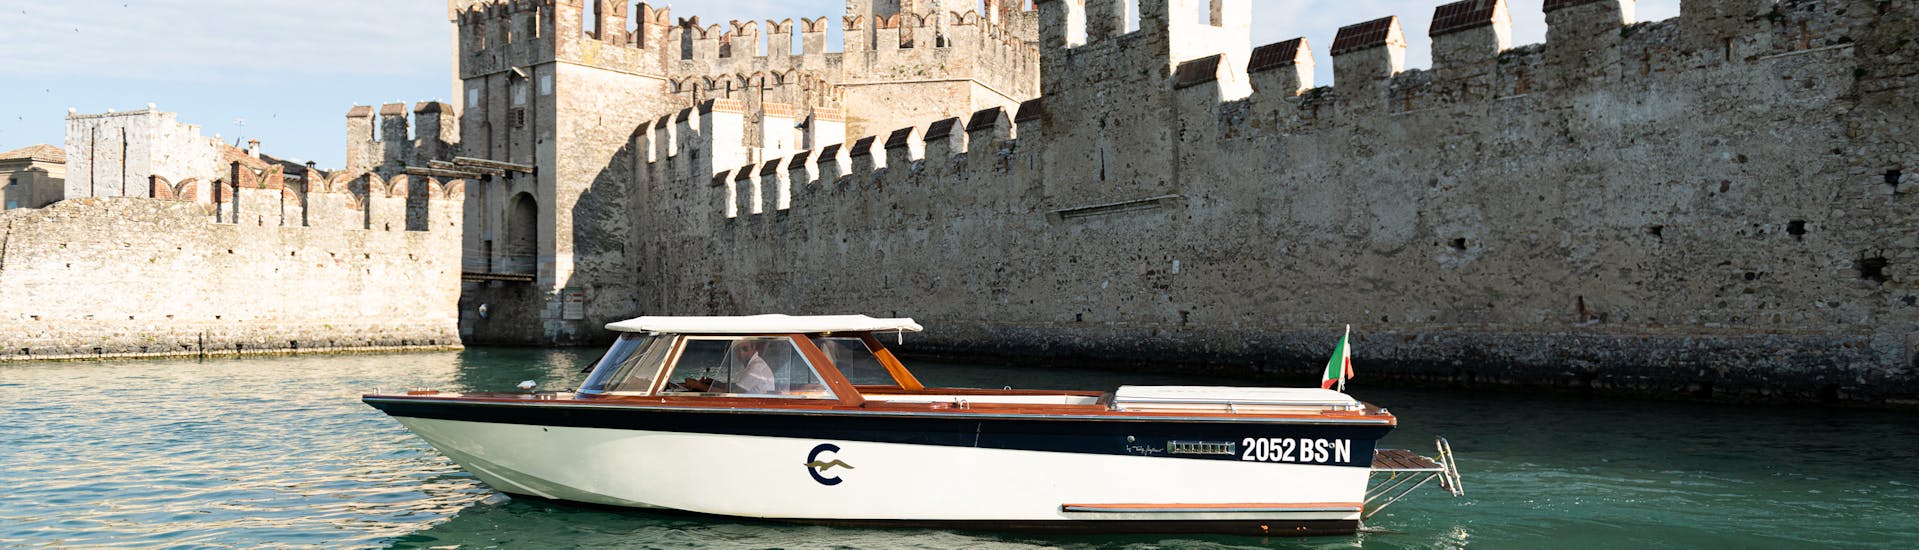 Een houten boot in Venetiaanse stijl voor de muren van het Scaliger kasteel in Sirmione gebruikt tijdens de privé boottocht op het Gardameer met Consolini Boats.